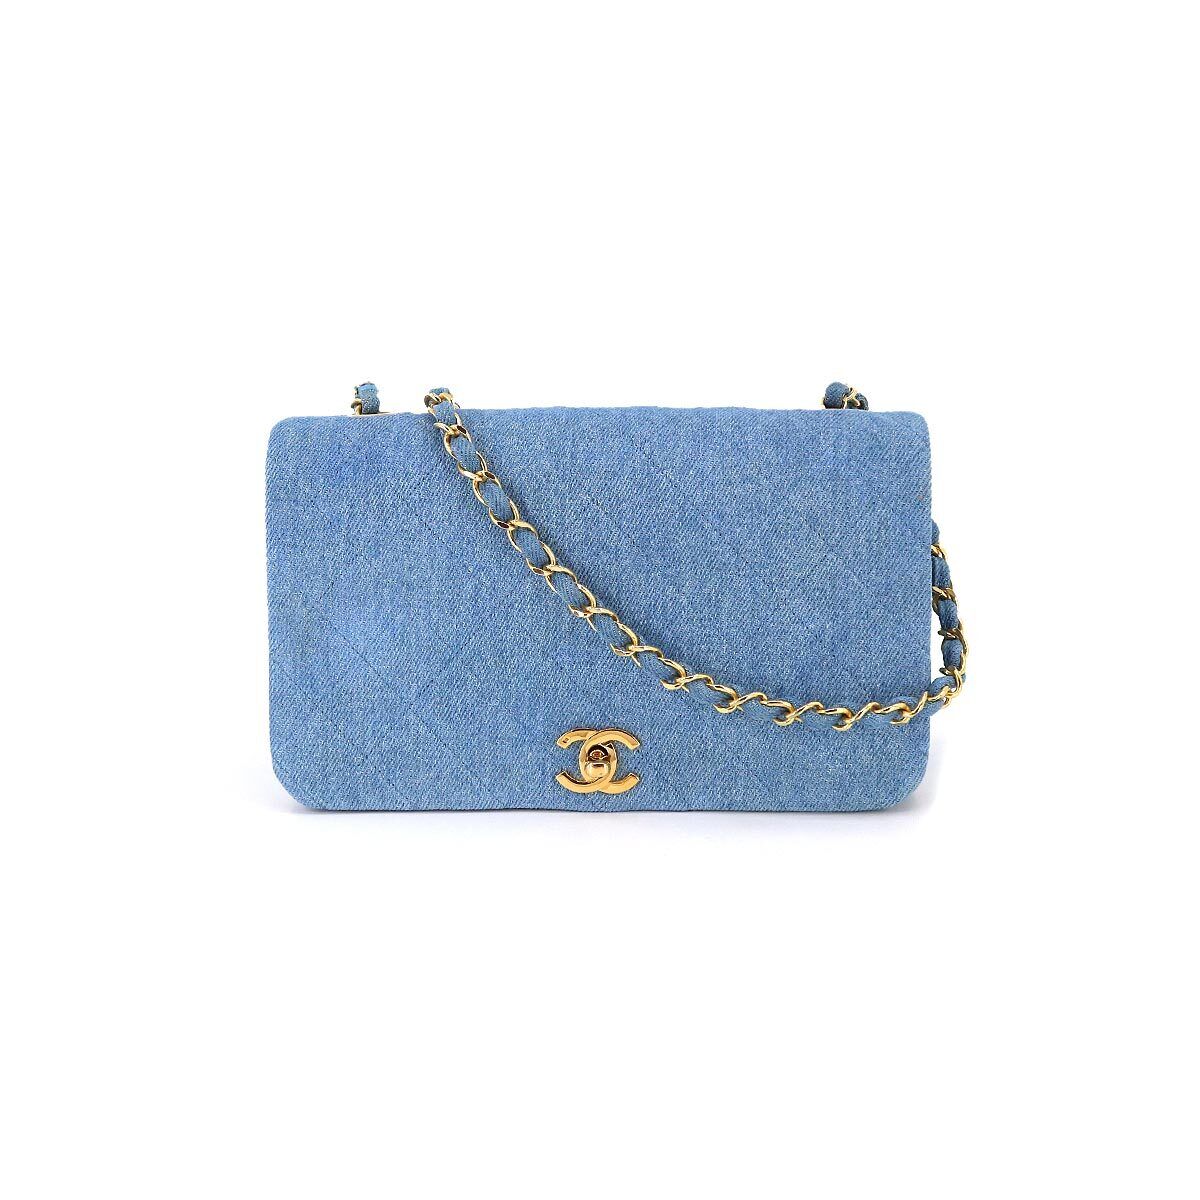 CHANEL Matelasse Chain Shoulder Bag Denim Blue Vintage Purse